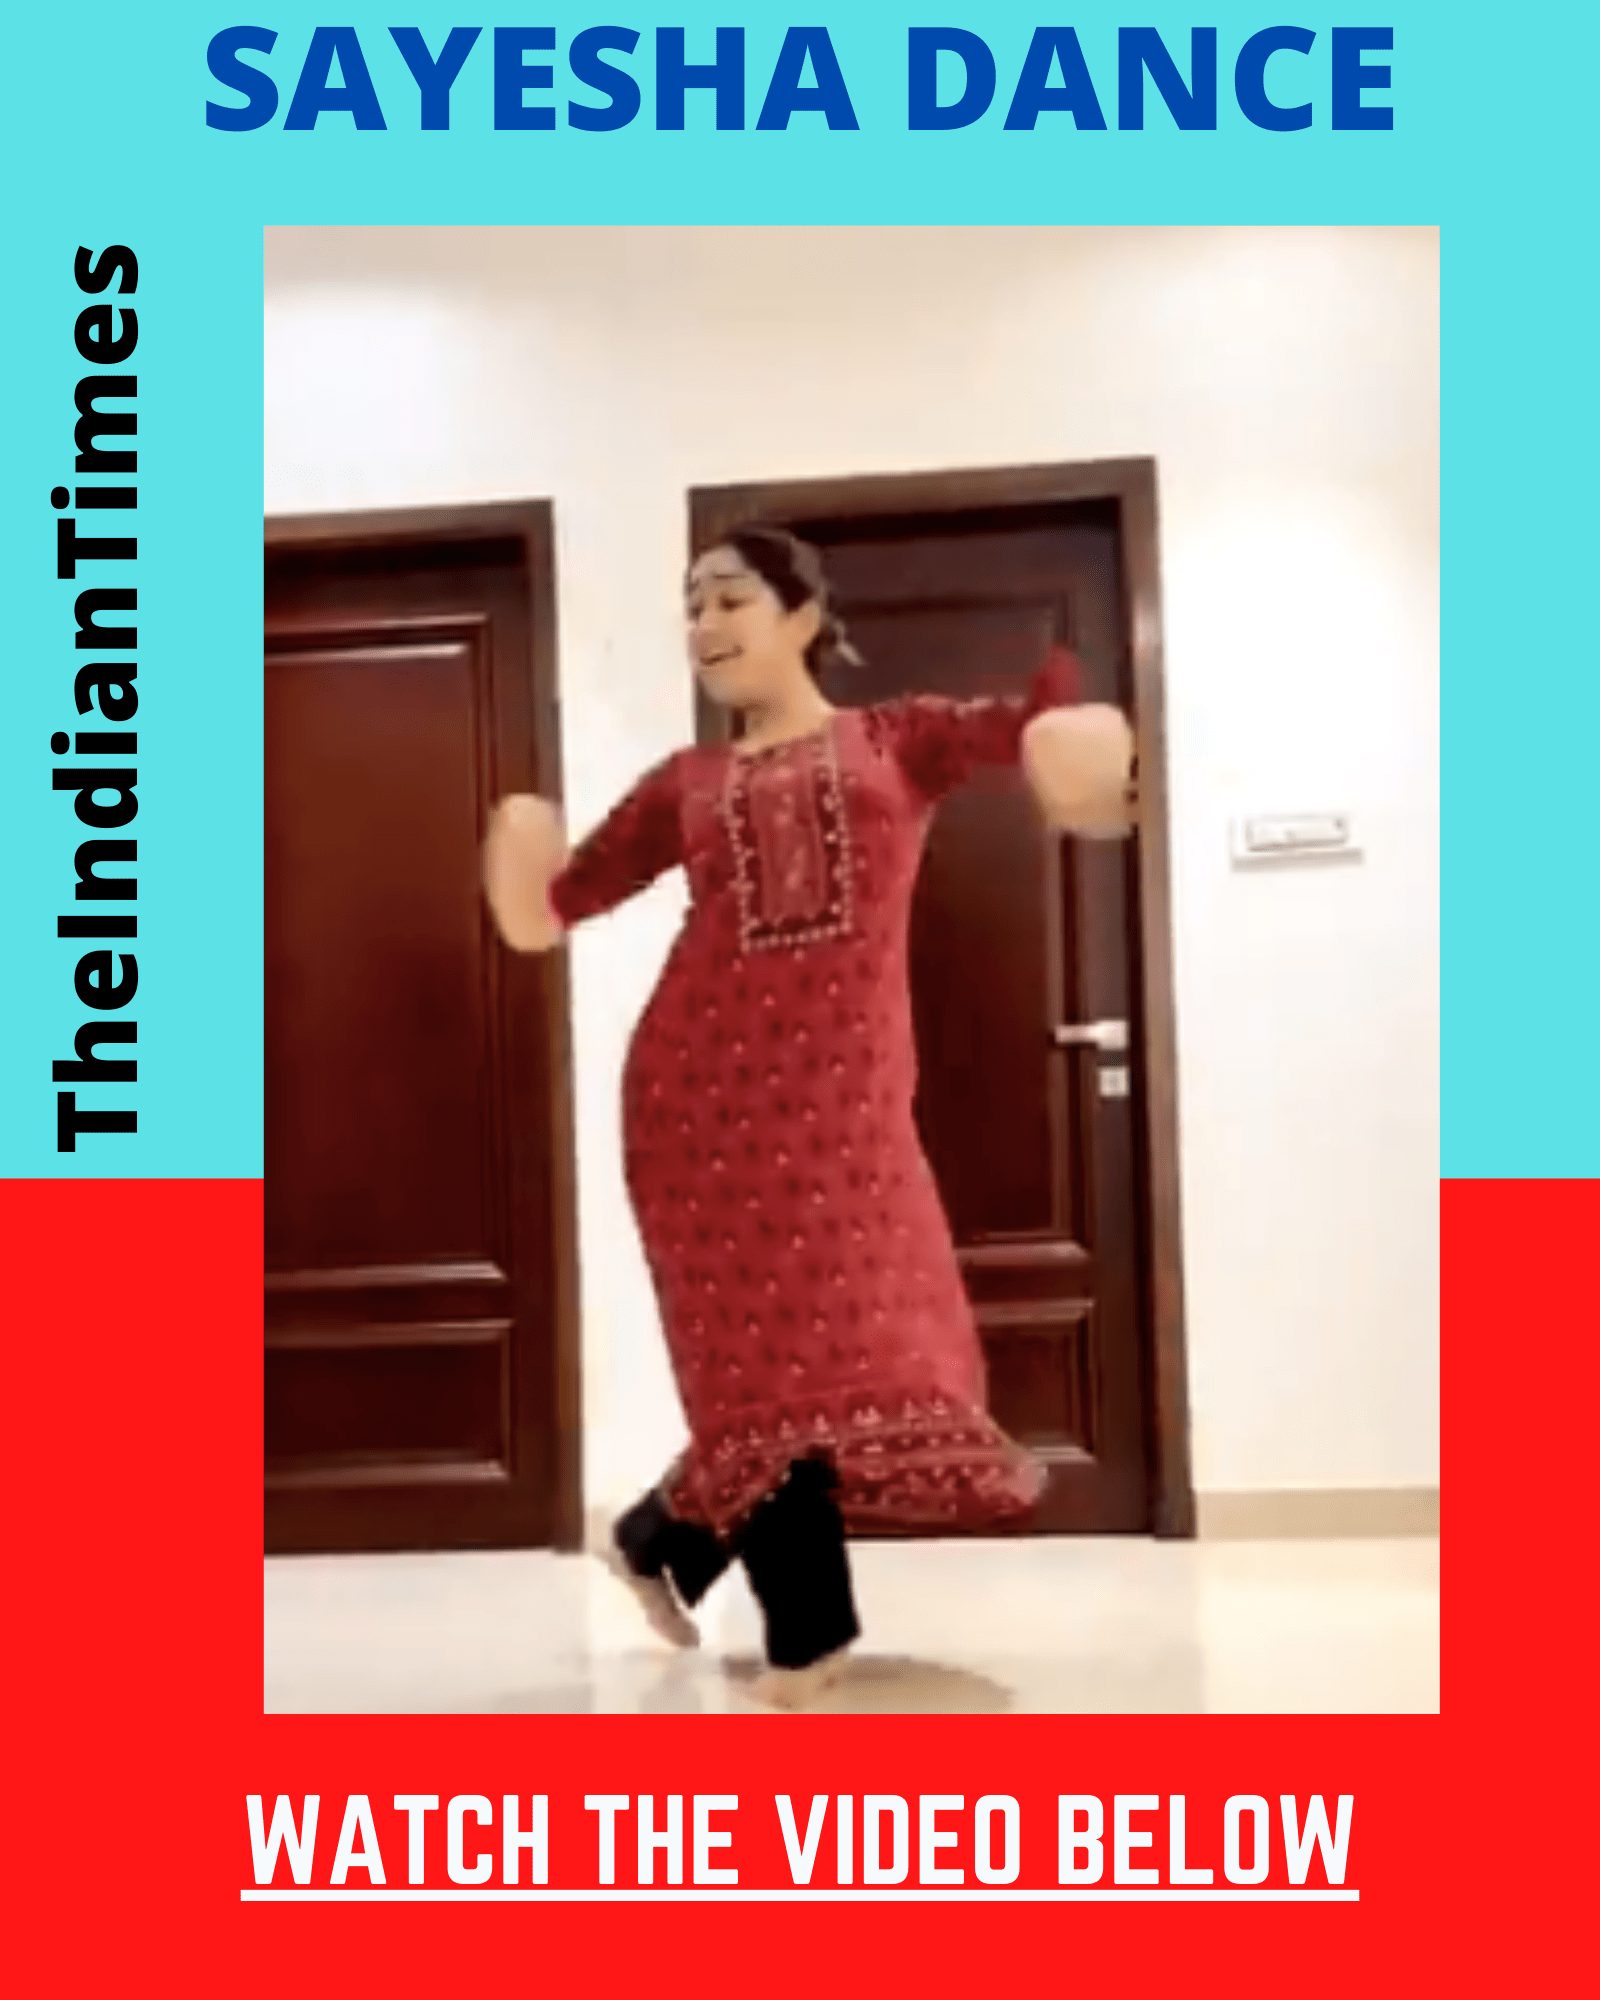 நடிகை சாயிஷா latest dance ! வீடியோ உள்ளே 1